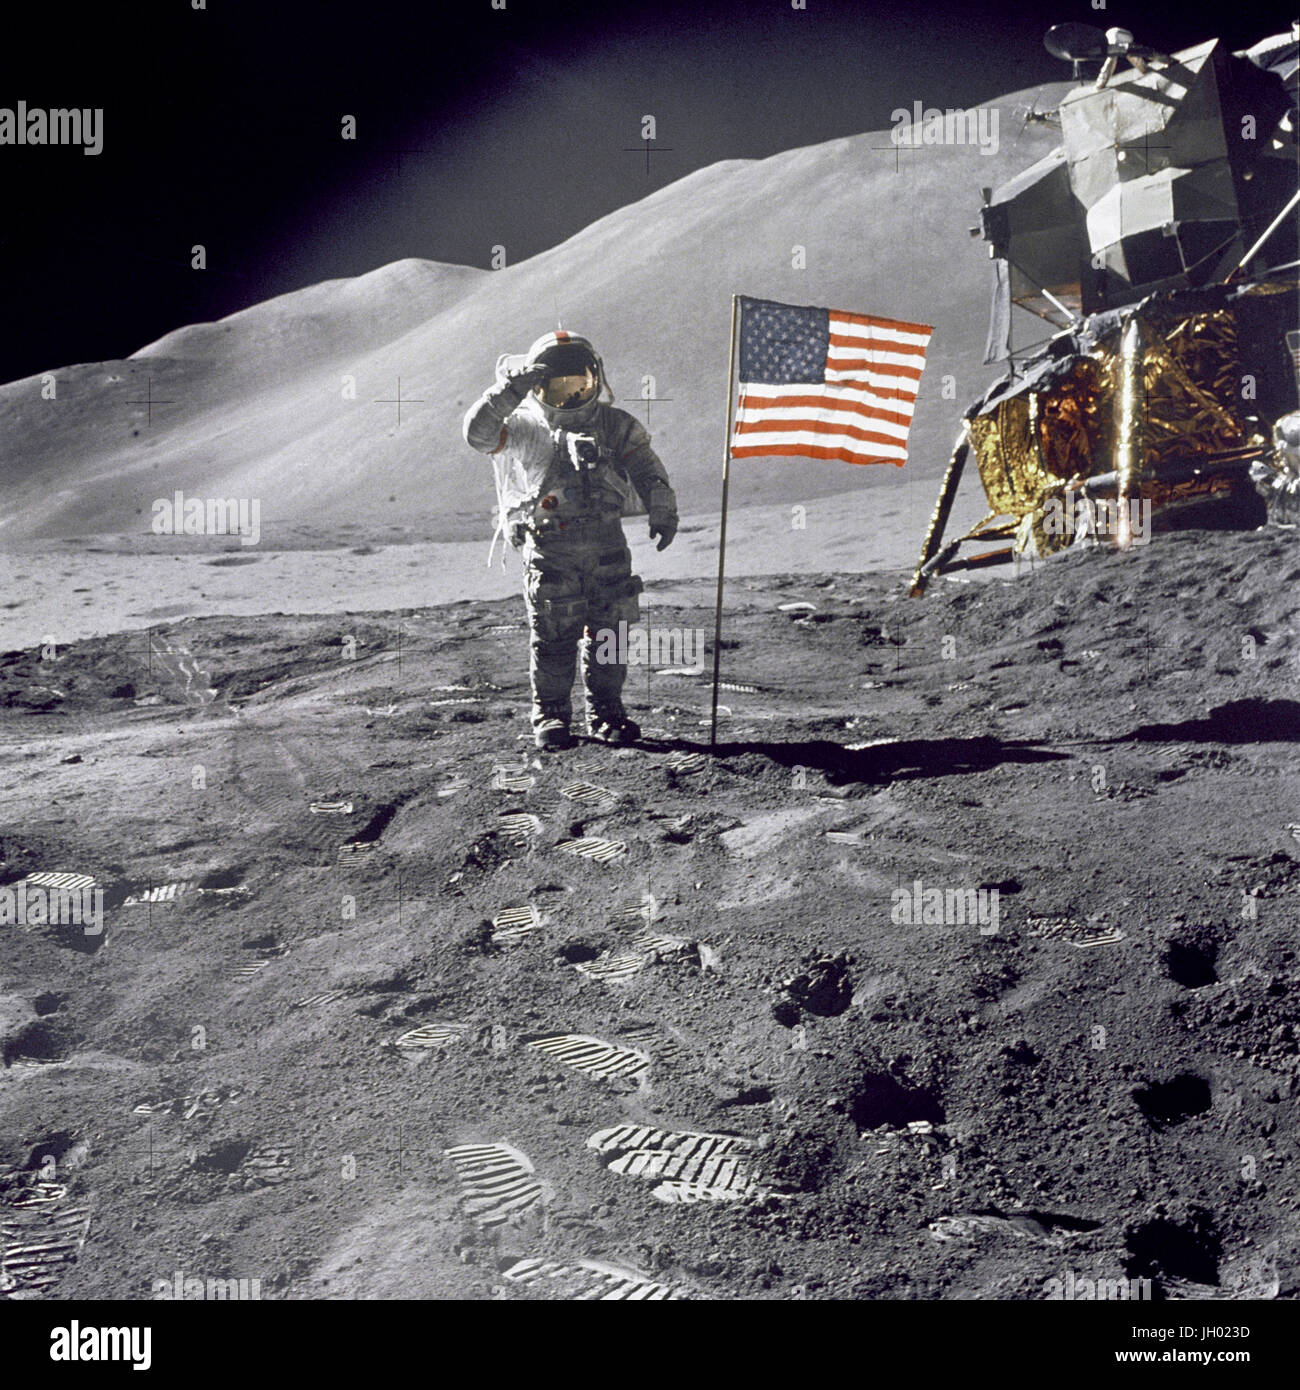 Astronaut David, Kommandant, gibt einen militärischen Gruß im stehen neben der bereitgestellten US Flagge während der Apollo 15 lunar Oberfläche Extravehicular Activity (EVA) am Landeplatz Hadley-Apenninen. Die Flagge wurde gegen Ende des EVA-2 eingesetzt. Die Mondlandefähre "Falcon" ist teilweise sichtbar auf der rechten Seite. Hadley Delta im Hintergrund erhebt sich etwa 4.000 Metern (etwa 13.124 Fuß) über der Ebene. Die Basis des Berges ist ungefähr 5 Kilometer (ca. 3 Landmeilen) entfernt. Dieses Foto wurde von Astronaut James B. Irwin, Pilot der Mondlandefähre aufgenommen. Stockfoto